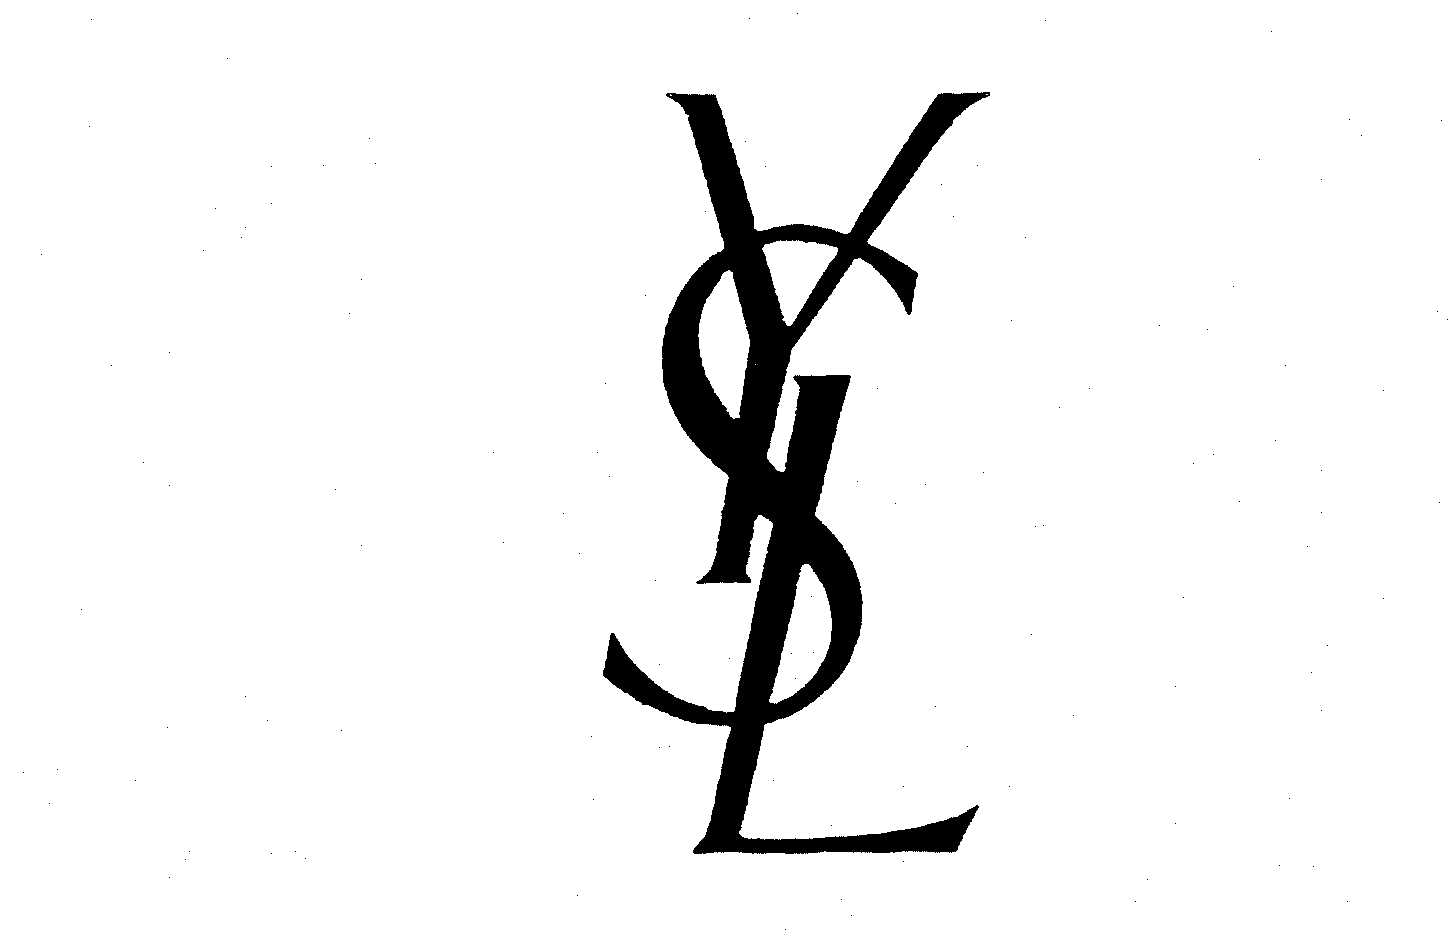 Ysl Yves Saint Laurent Trademark Registration